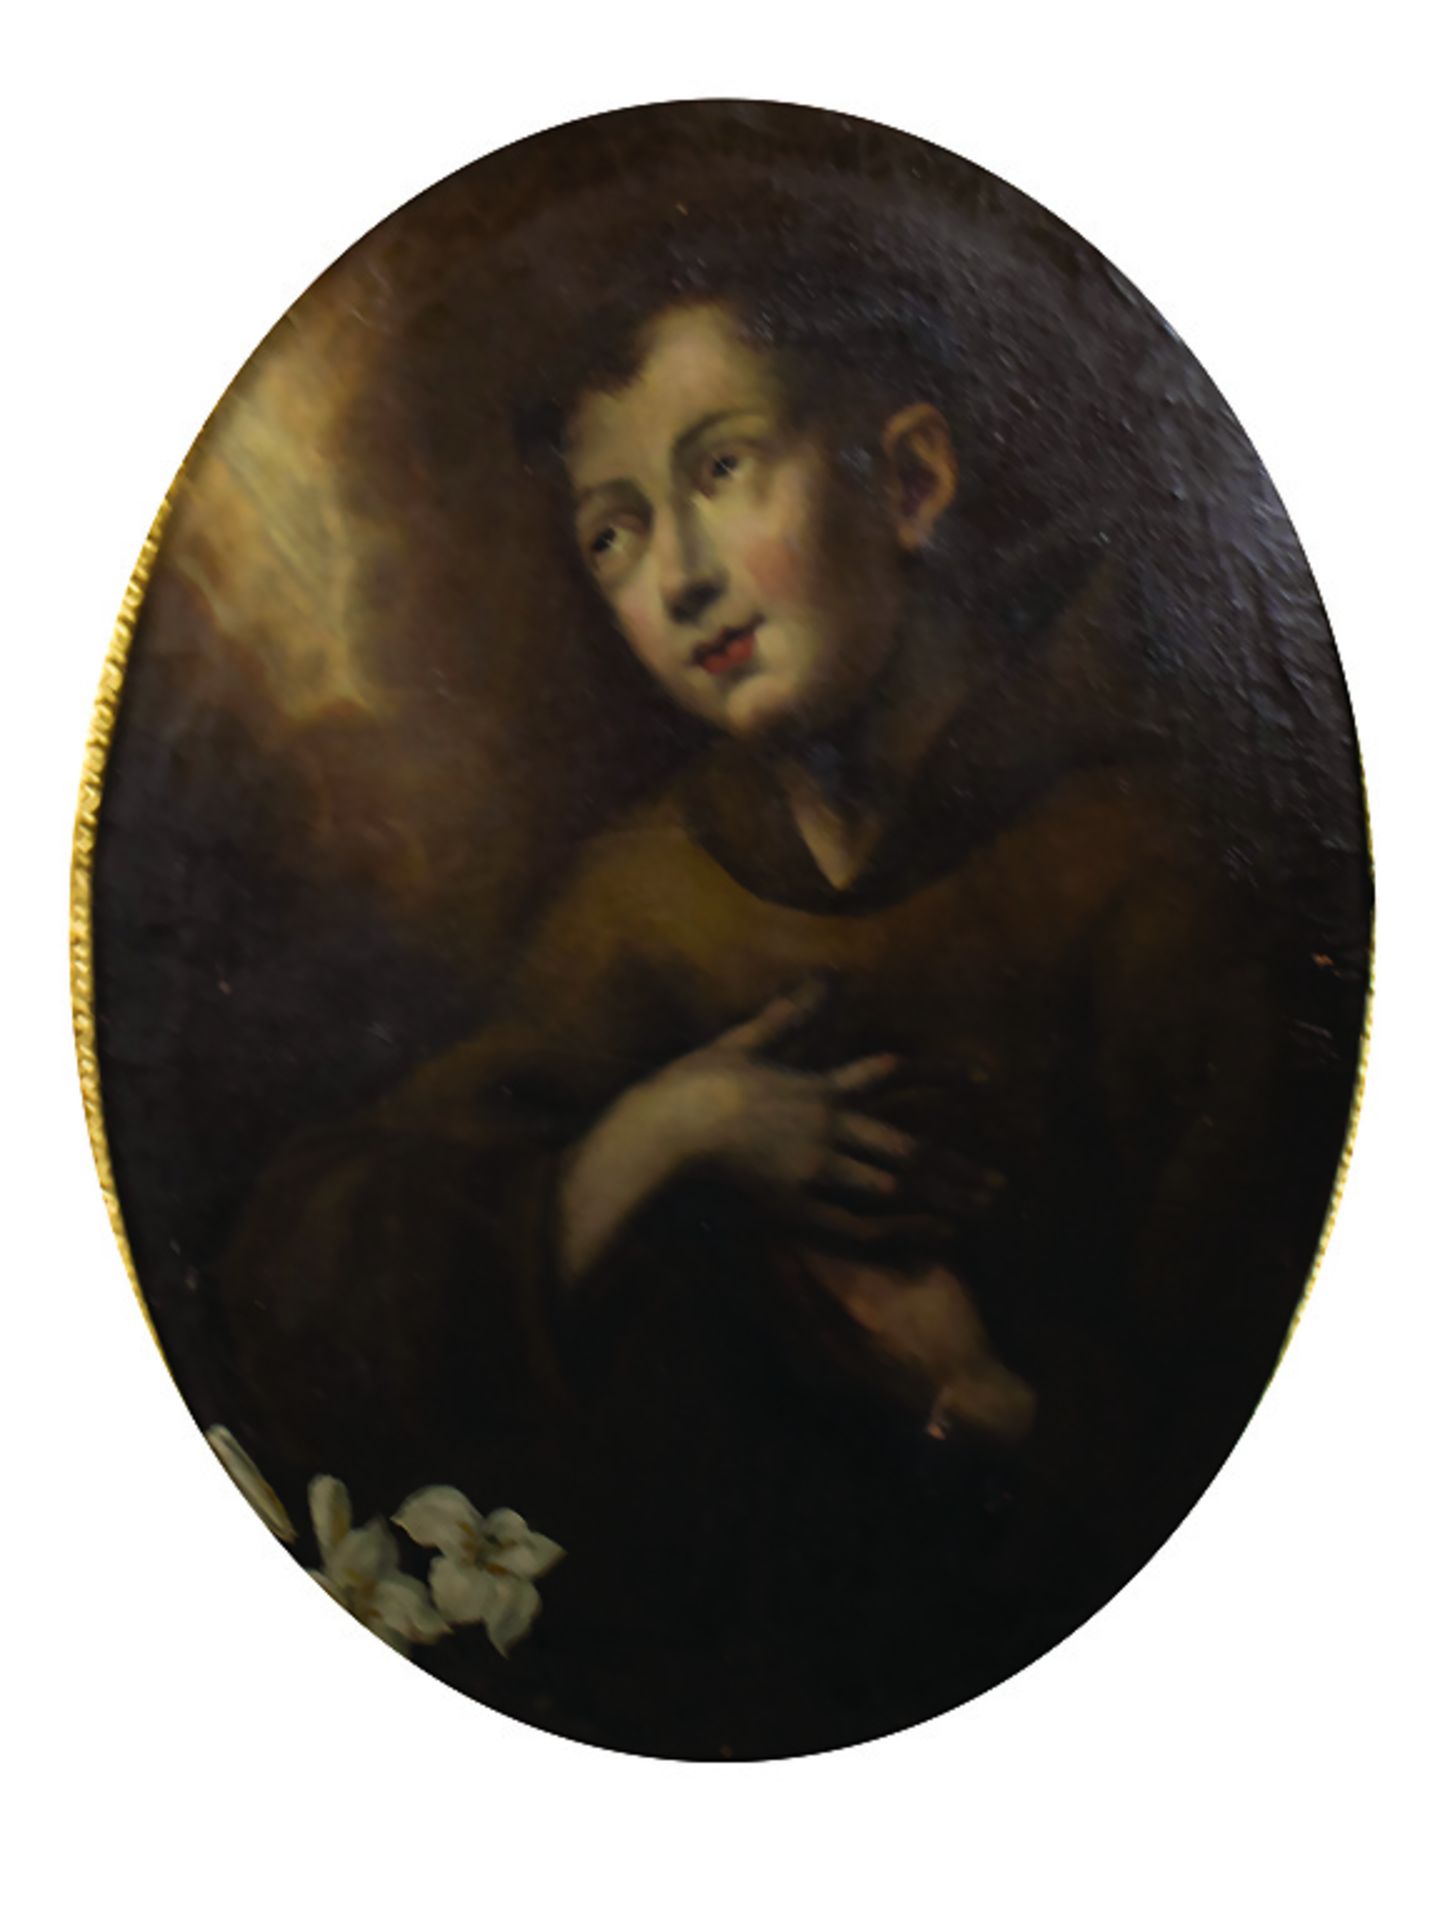 Unbekannter Künstler des 18. Jh., 'Heiliger Antonius von Padua' / 'St. Anthony of Padua'